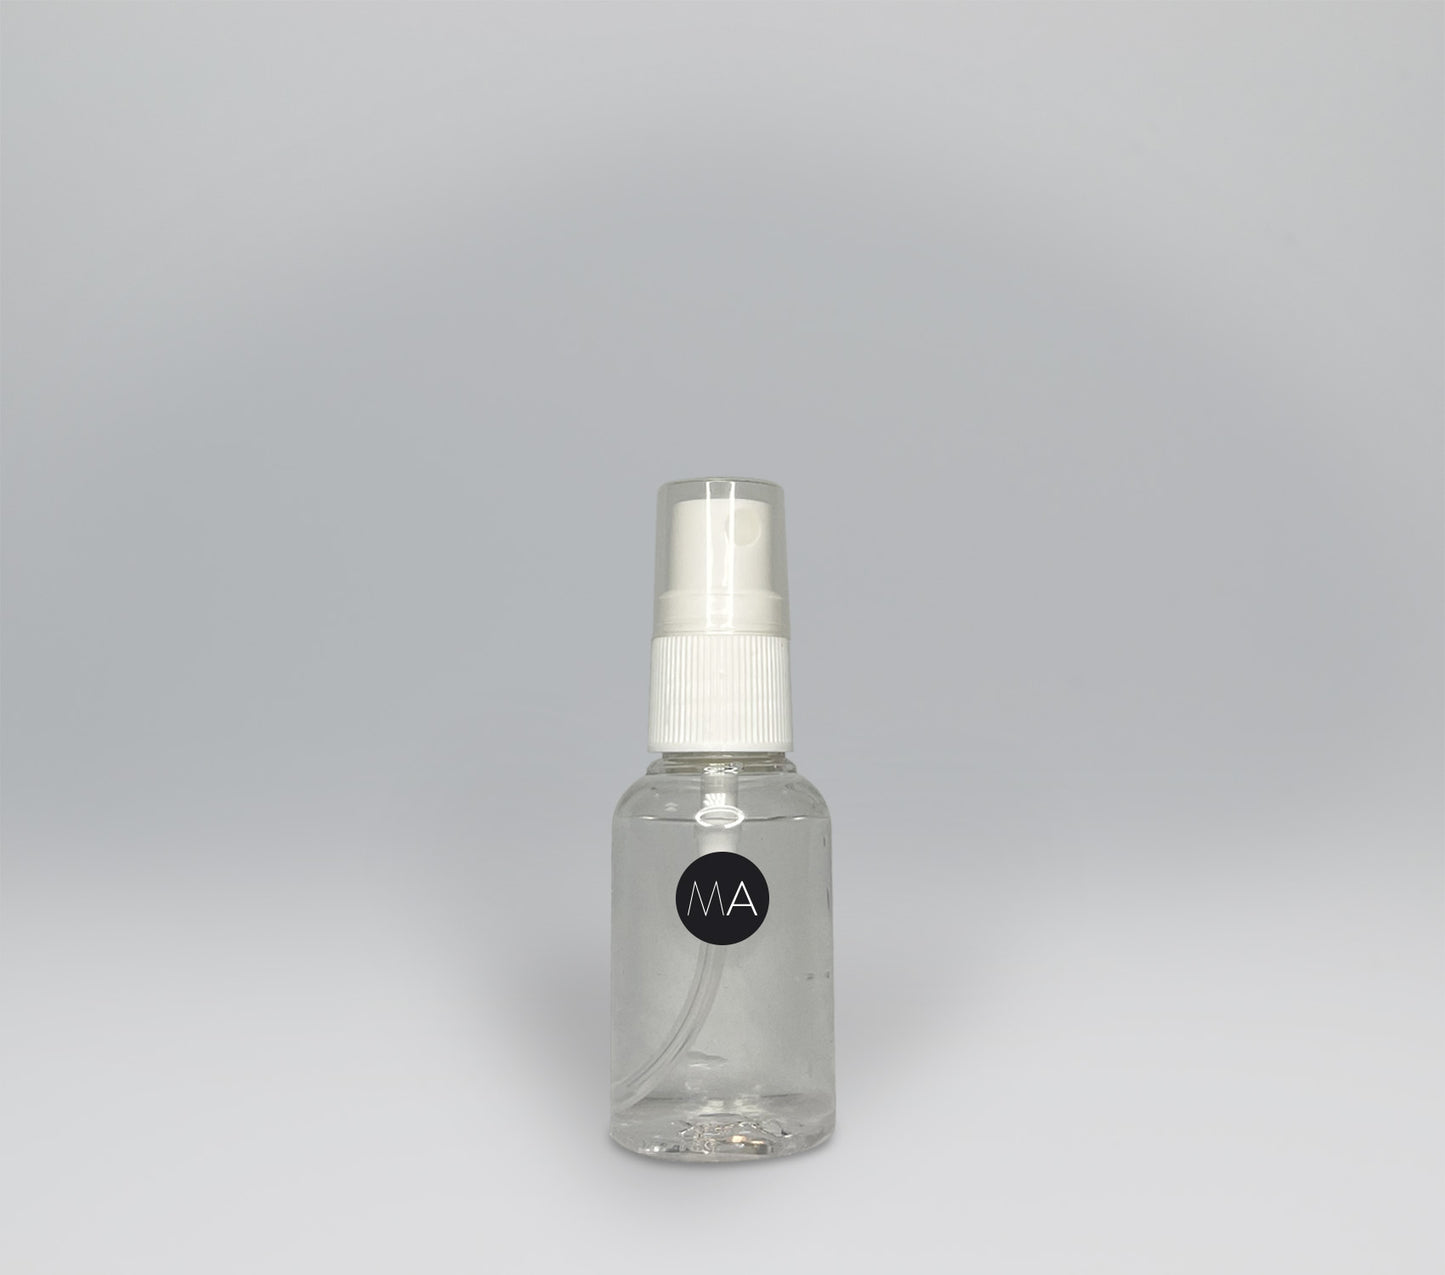 Spray ambientador 25 ml de color transparente.